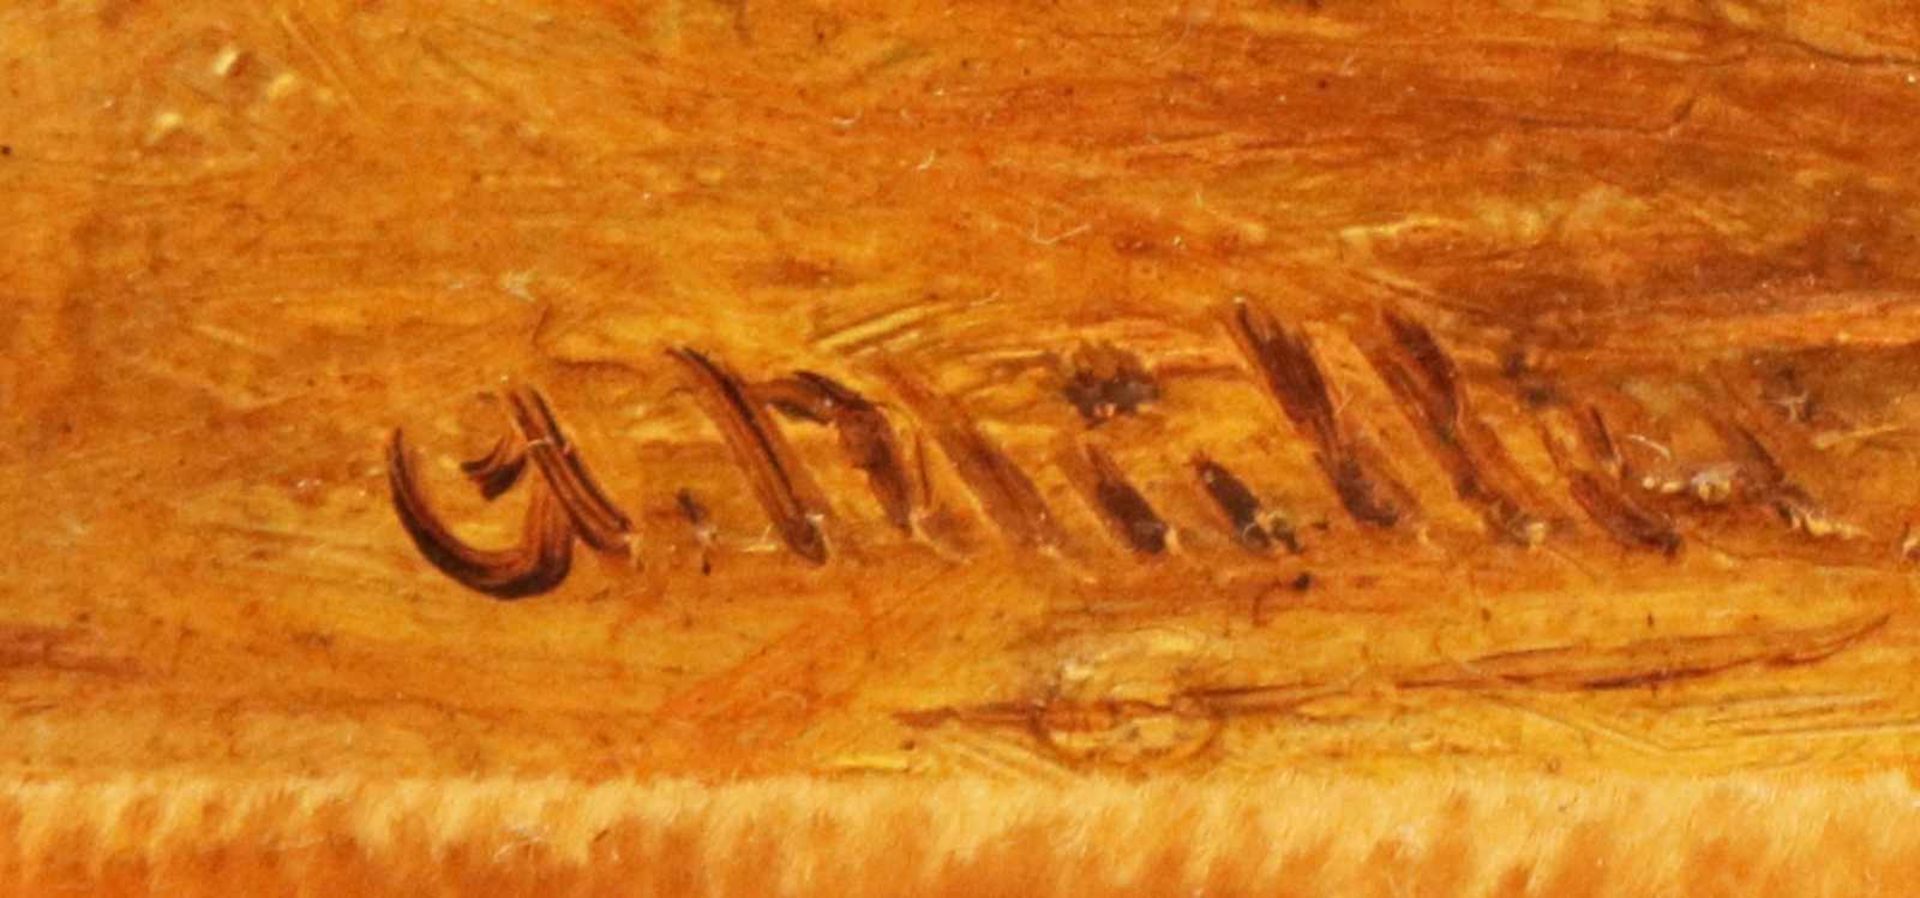 UNBEKANNTER KÜNSTLER Öl auf Holz, ¨Pferdeporträt ¨ (brauner Hengst), unten rechts signiert ¨G. - Image 2 of 2